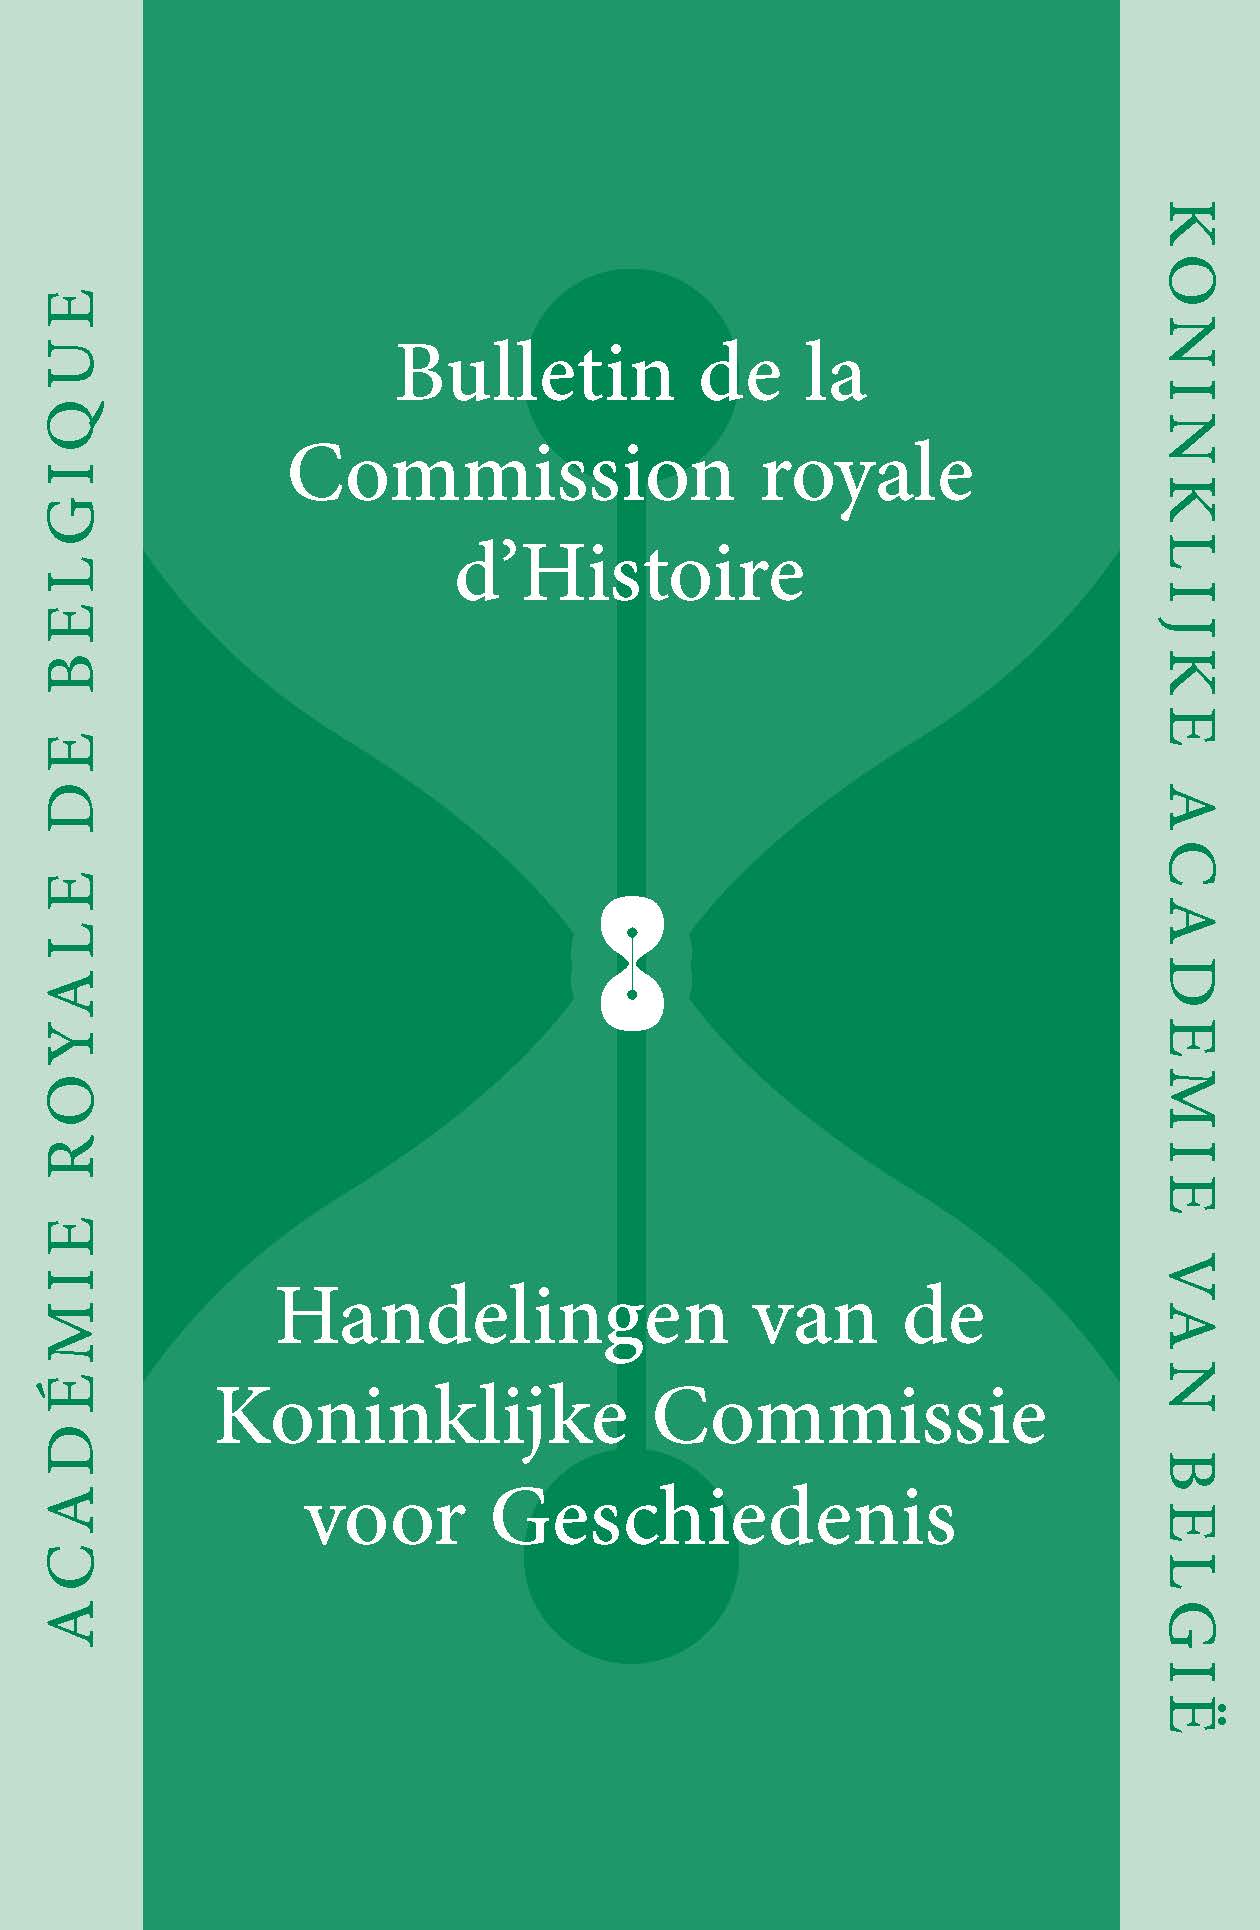 HANDELINGEN VAN DE KONINKLIJKE COMMISSIE VOOR GESCHIEDENIS/BULLETIN, vol. 178, 2012